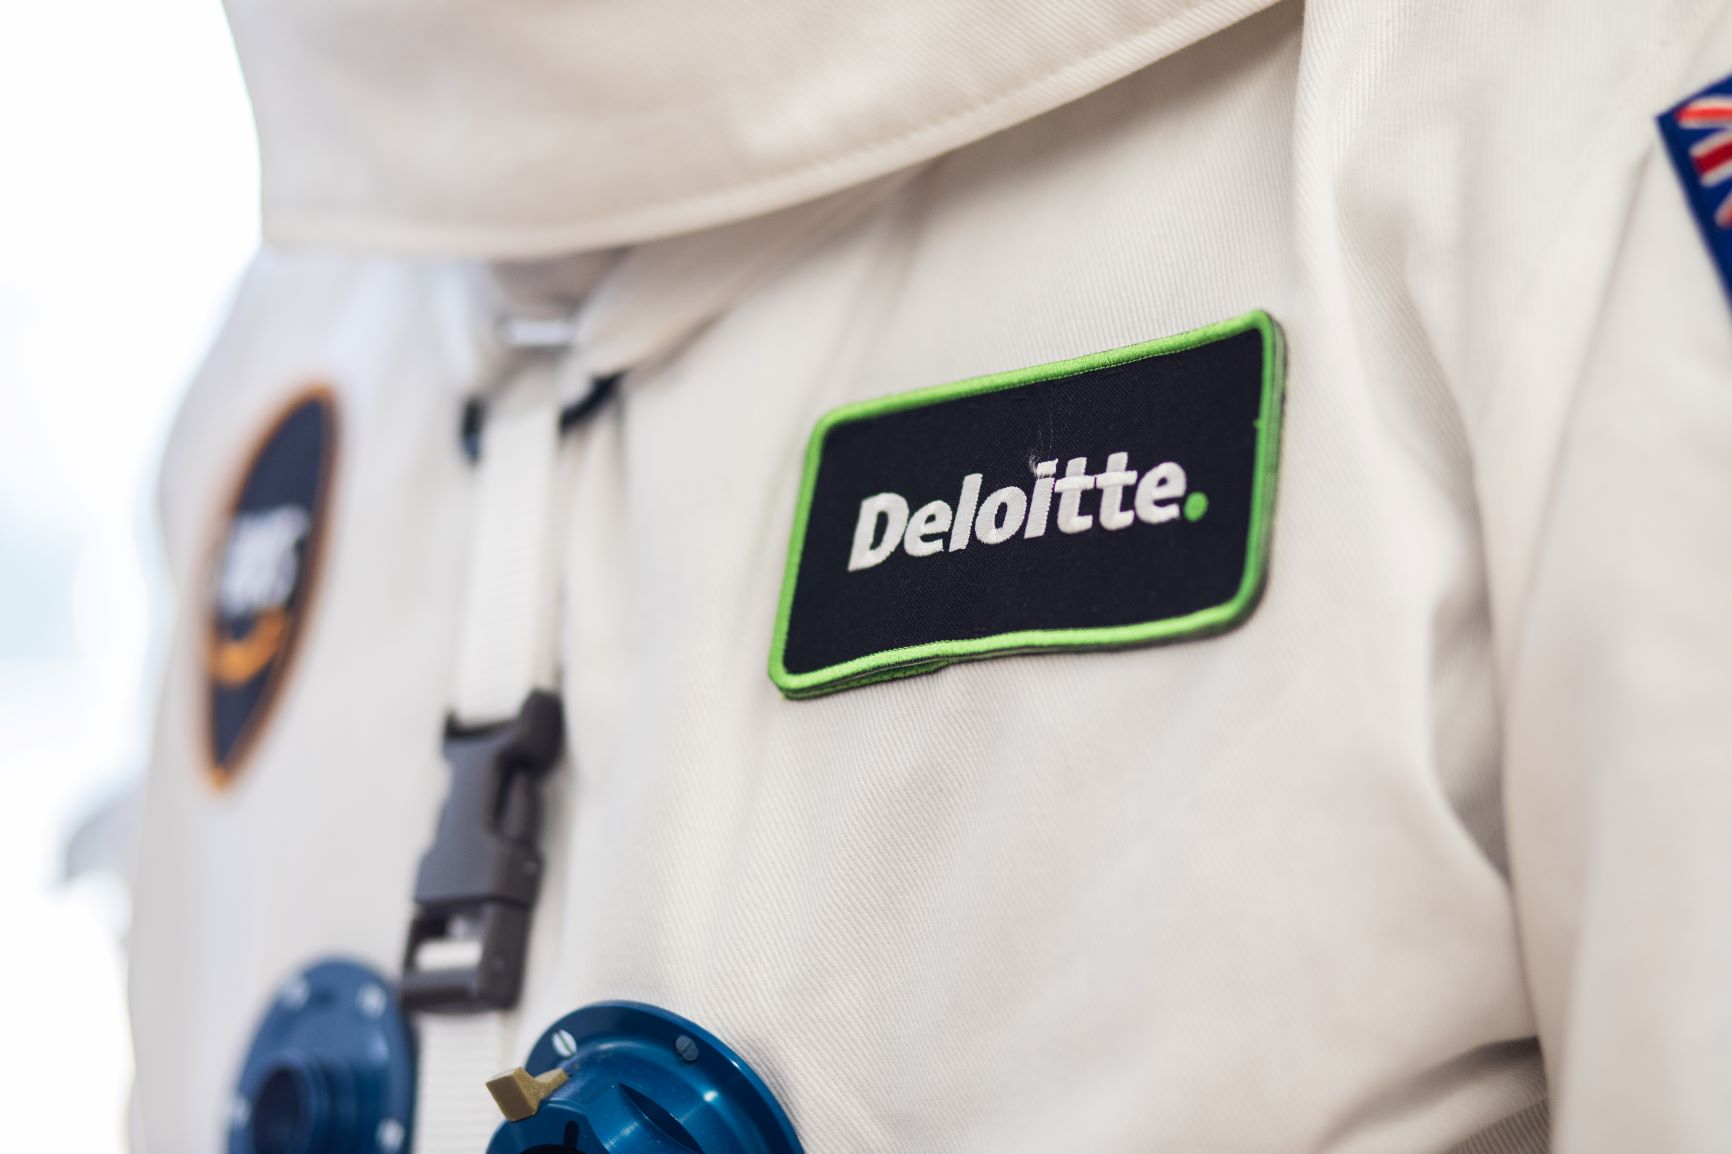 Deloitte patch on space suit